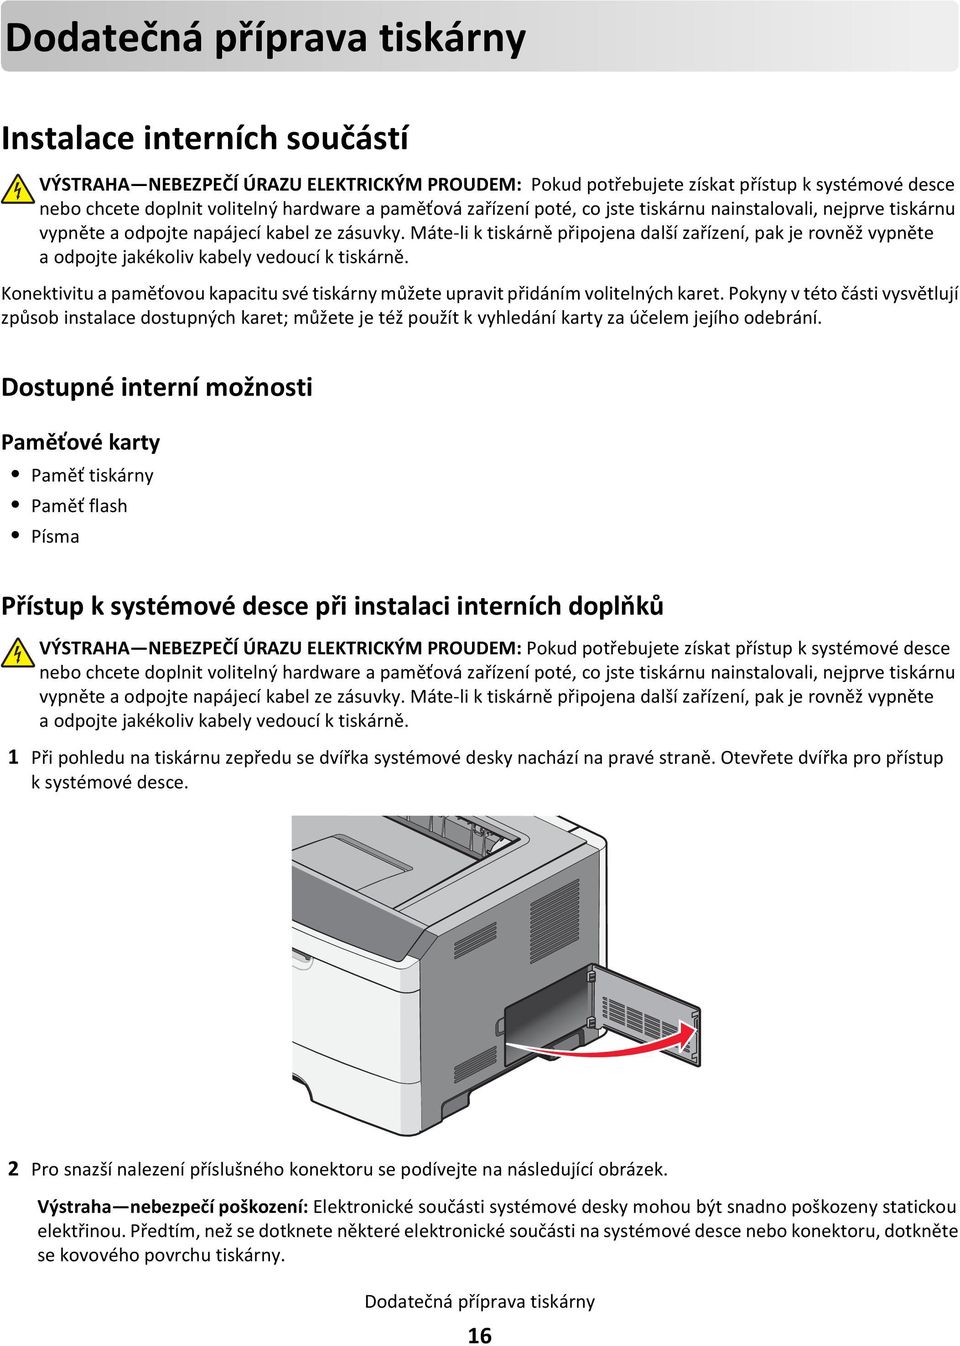 Máte-li k tiskárně připojena další zařízení, pak je rovněž vypněte a odpojte jakékoliv kabely vedoucí k tiskárně.